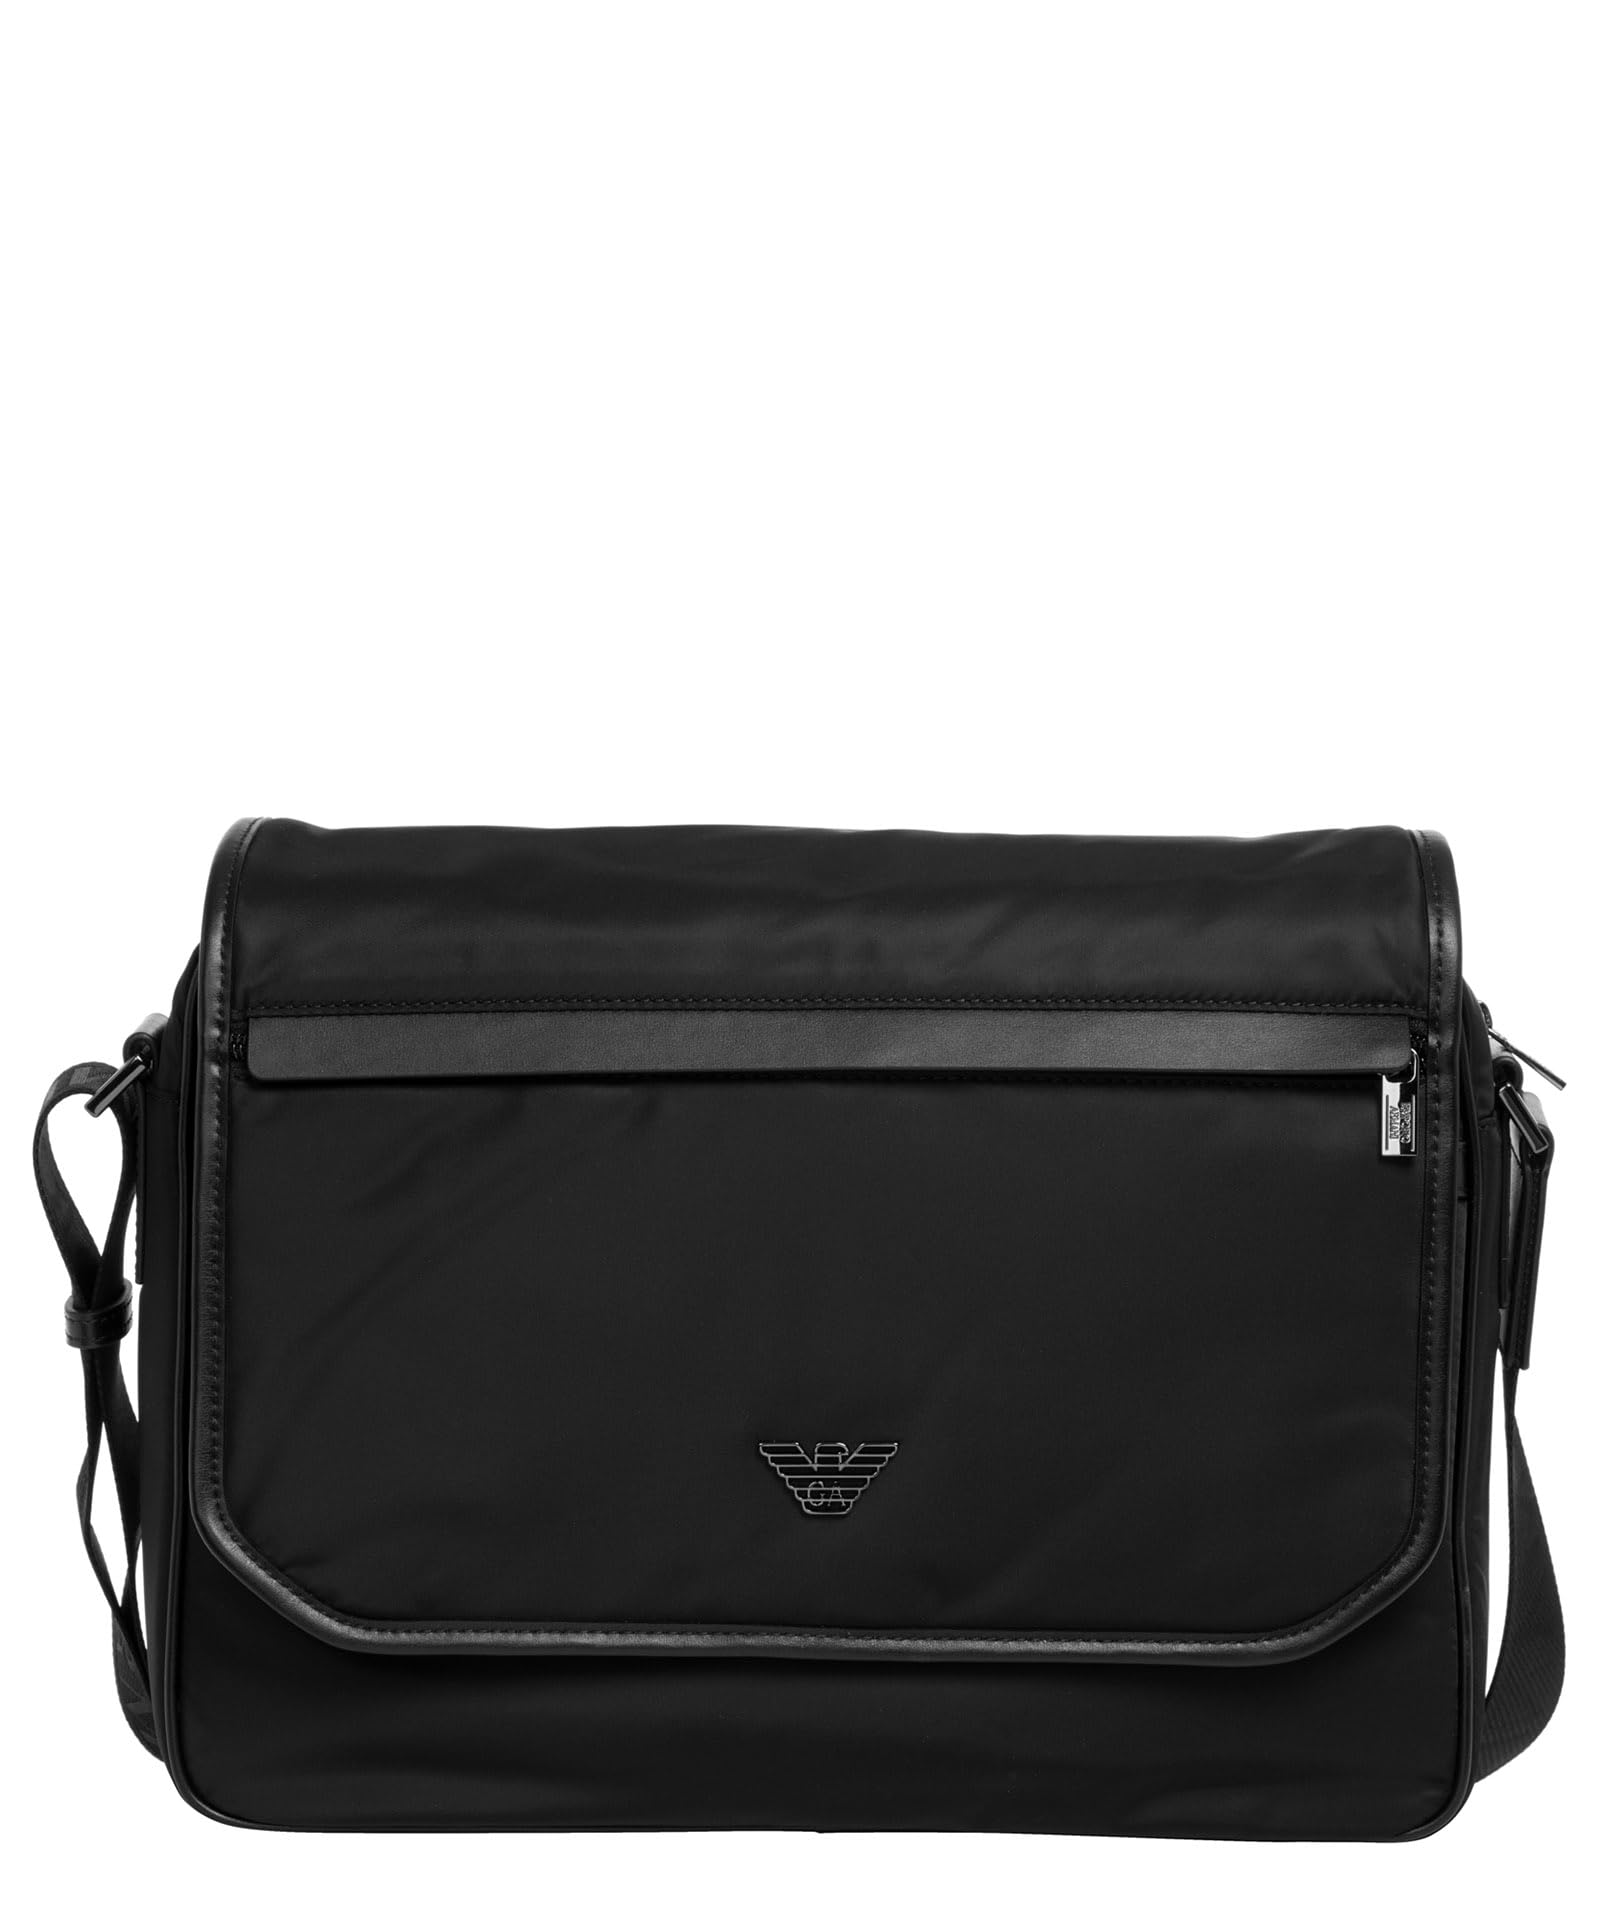 Emporio Armani men briefcase black